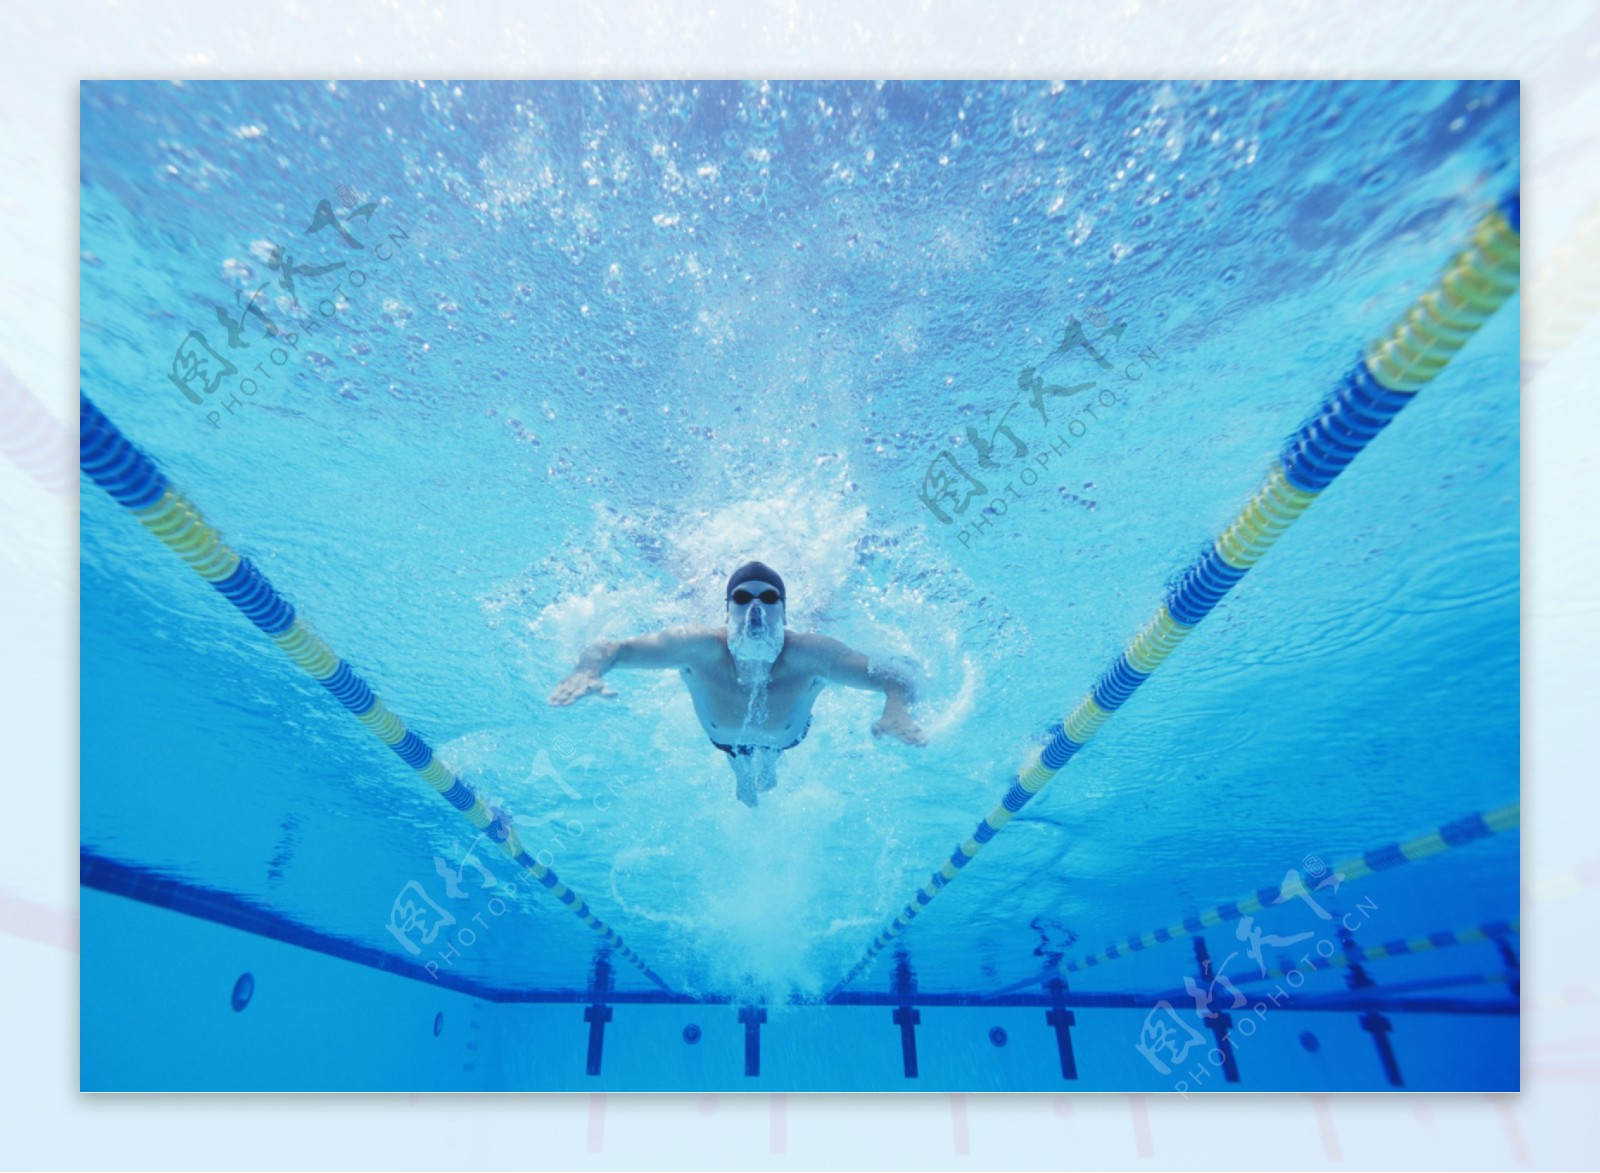 游泳池中游泳的男子 - 免费可商用图片 - CC0素材网